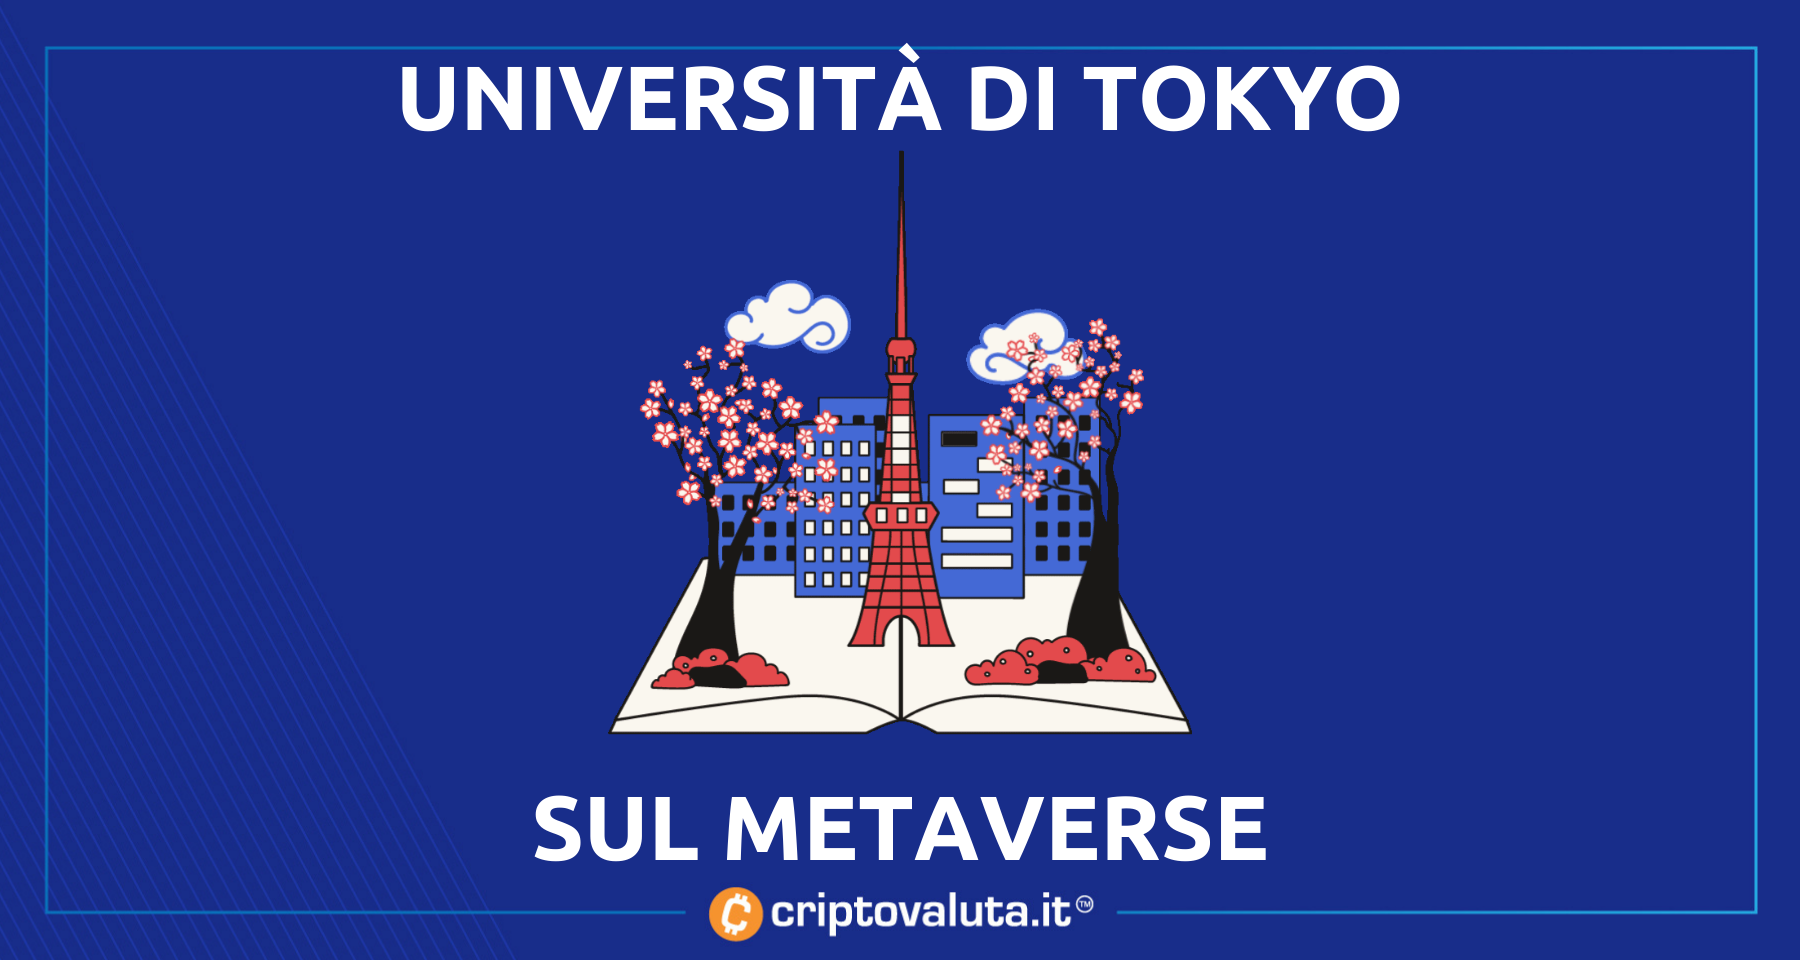 Università di Tokyo sul metaverse! | La grande istruzione alle grandi manovre